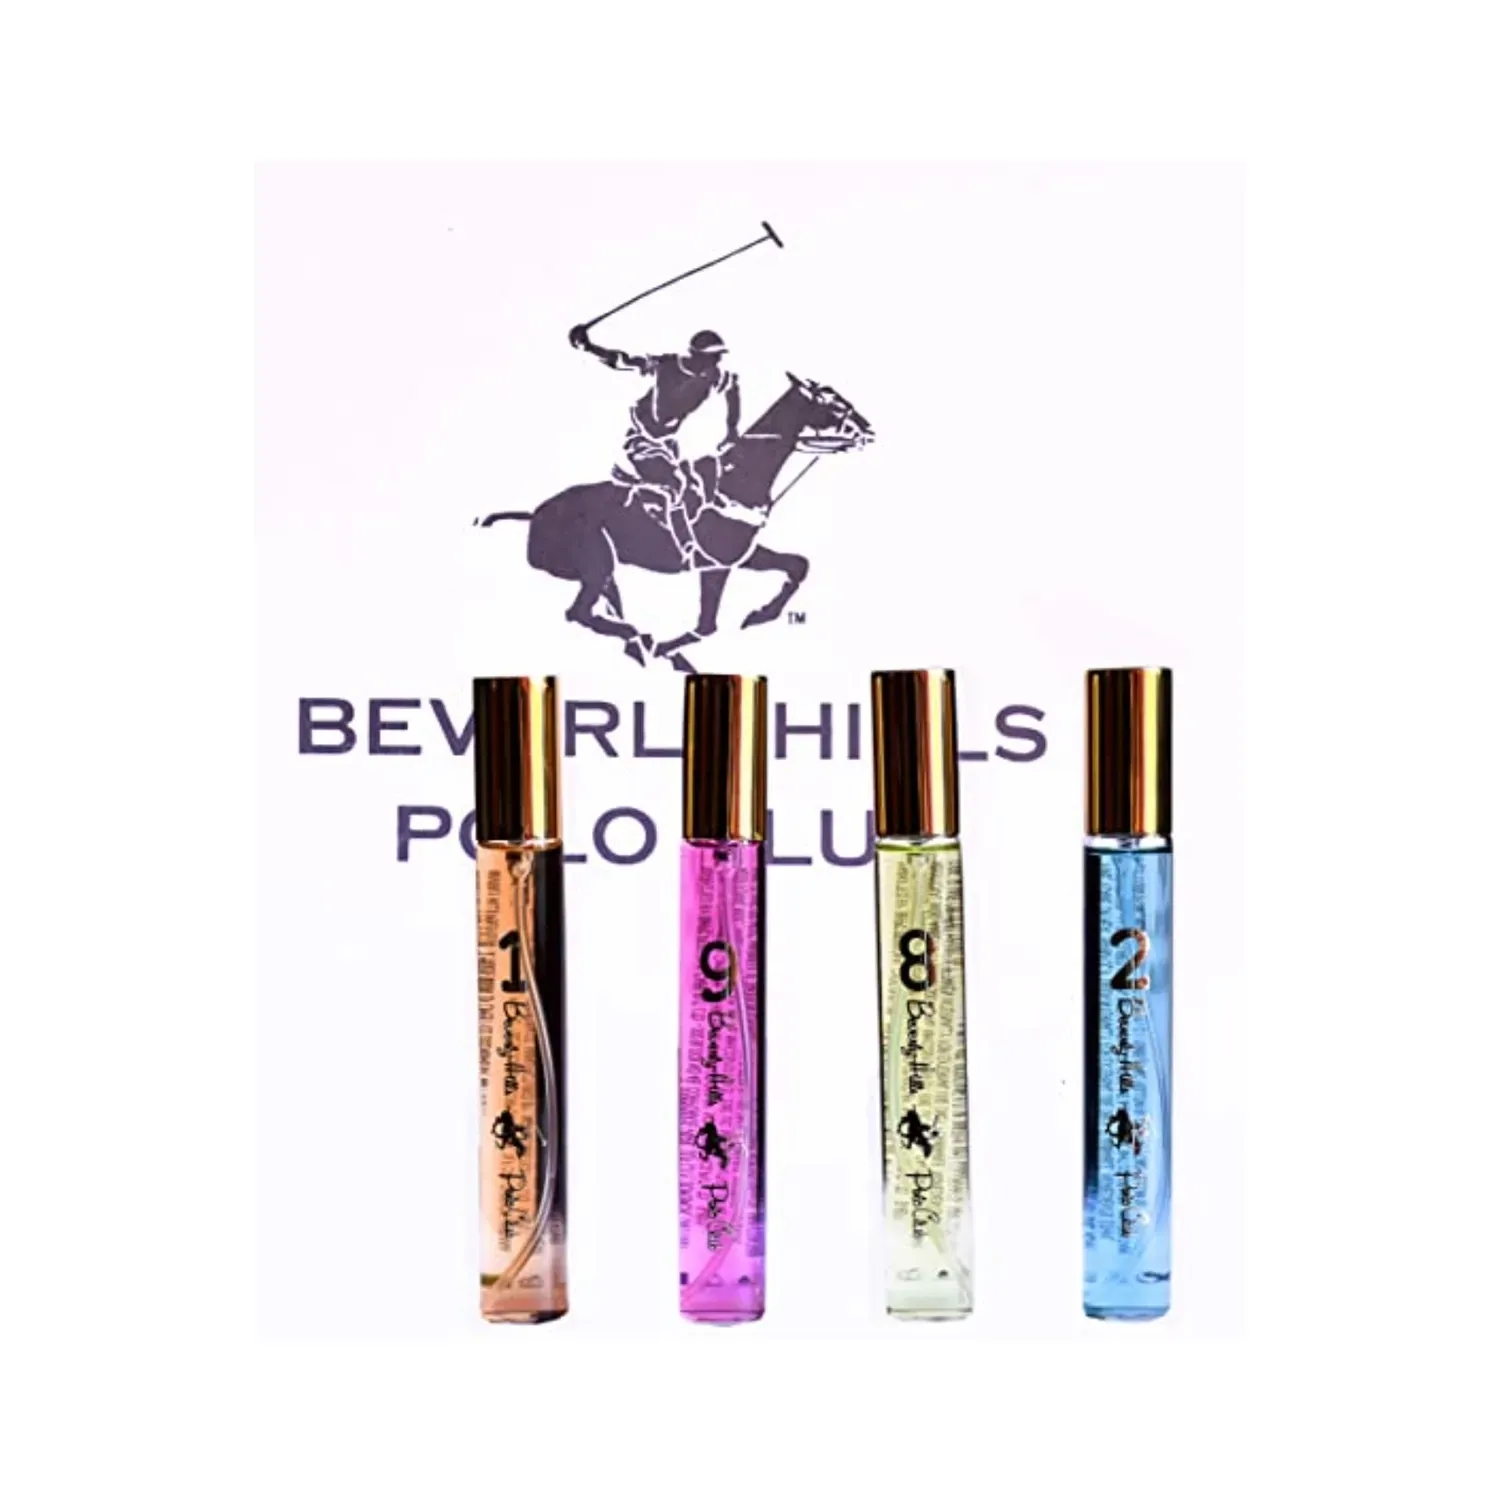 BEVERLY HILLS POLO CLUB | BEVERLY HILLS POLO CLUB Series Collection Eau De Parfum (4 Pcs)